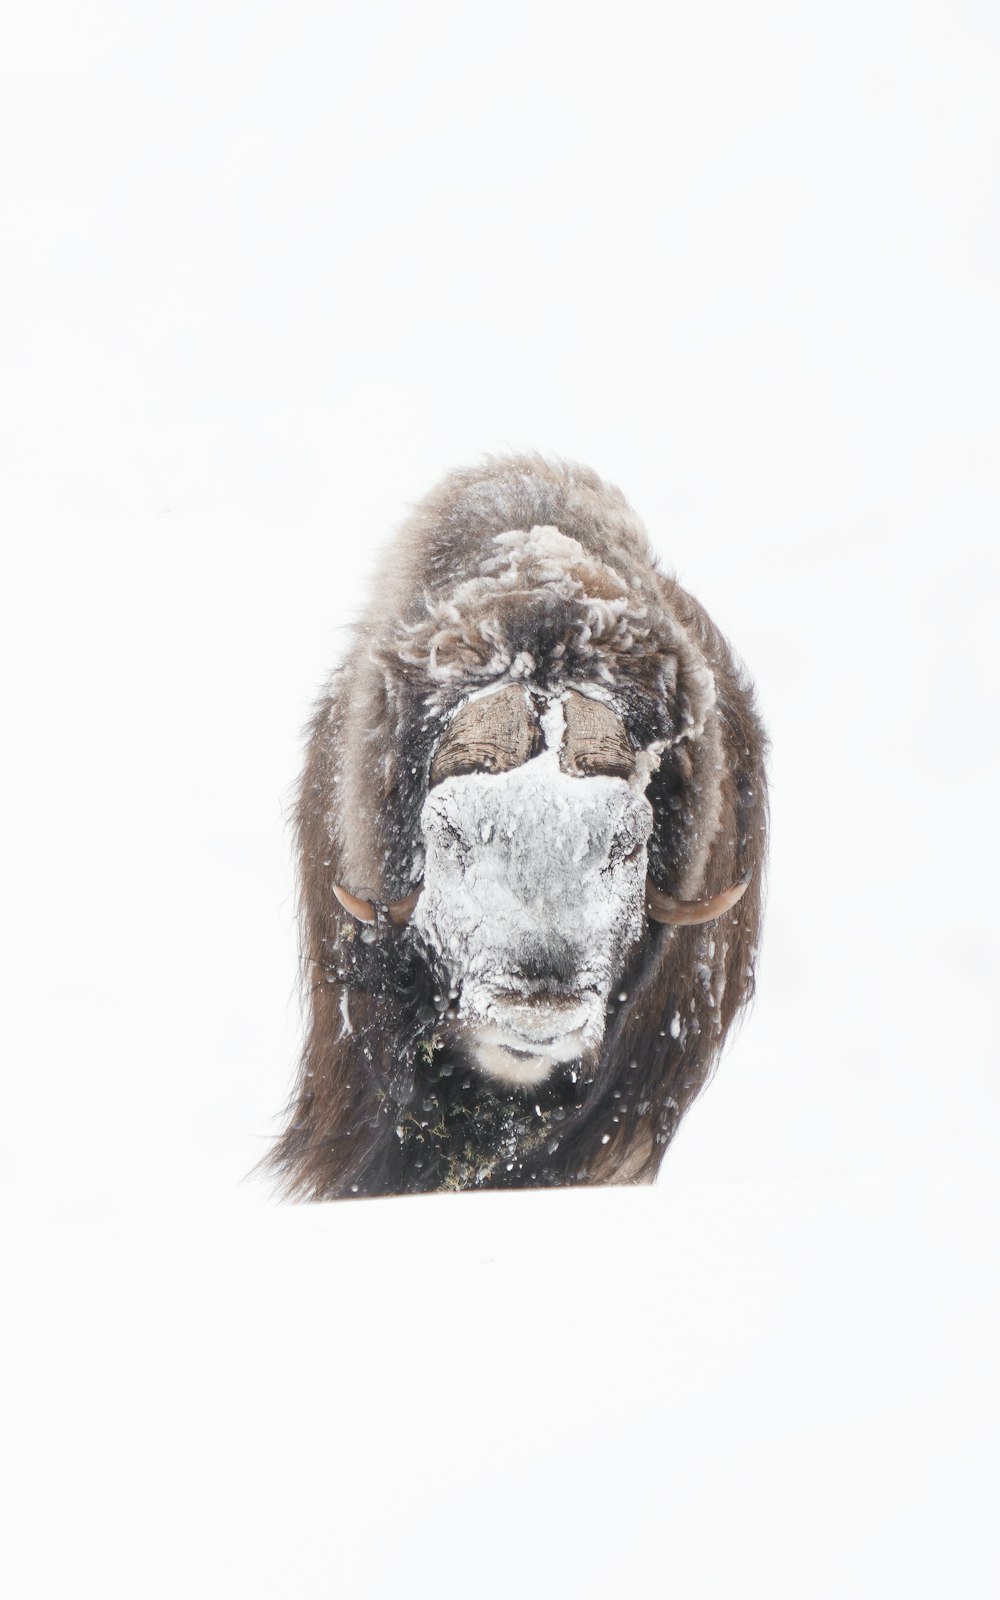 Ein Affe mit Maske im Schnee